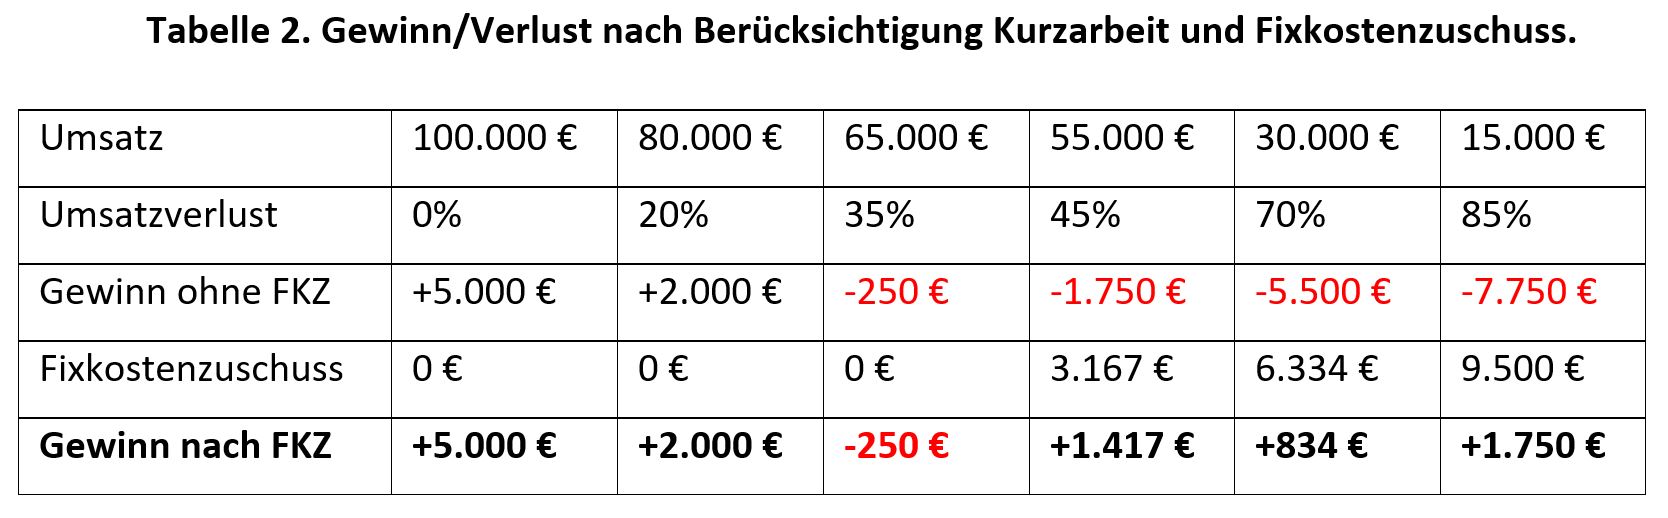 Tabelle 2. Gewinn/Verlust nach Berücksichtigung Kurzarbeit und Fixkostenzuschuss.